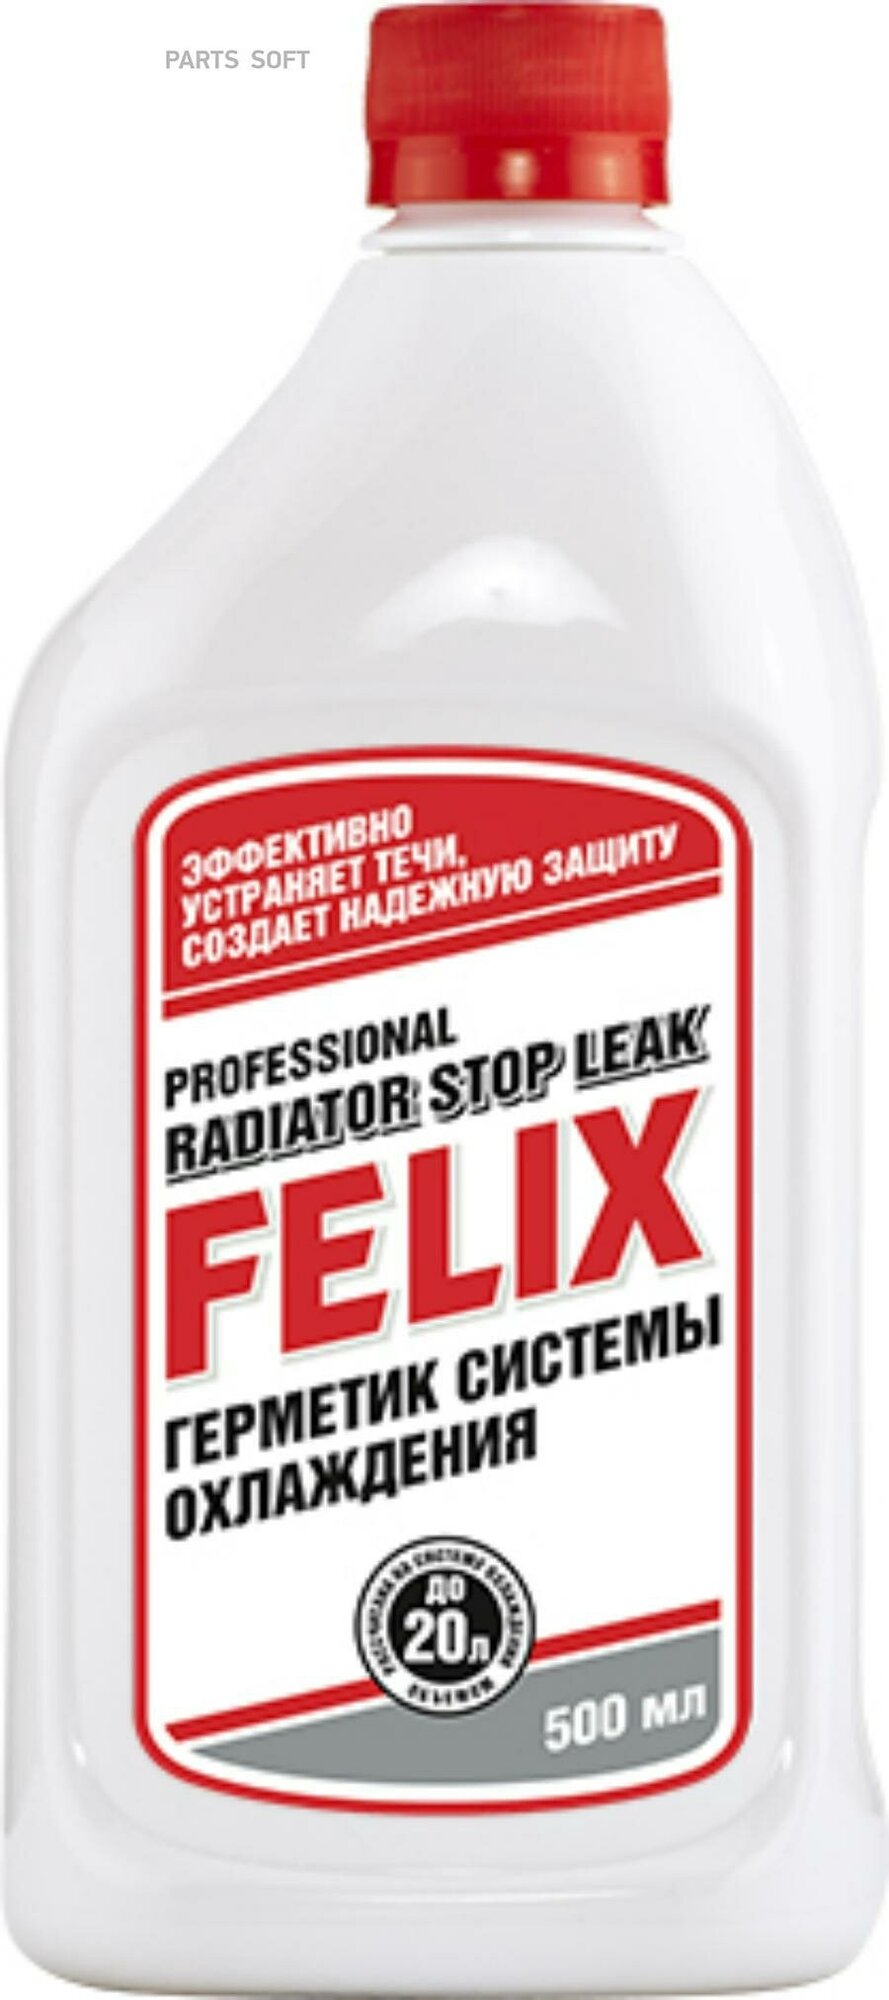 FELIX герметик системы охлаждения 500 МЛ 411040001